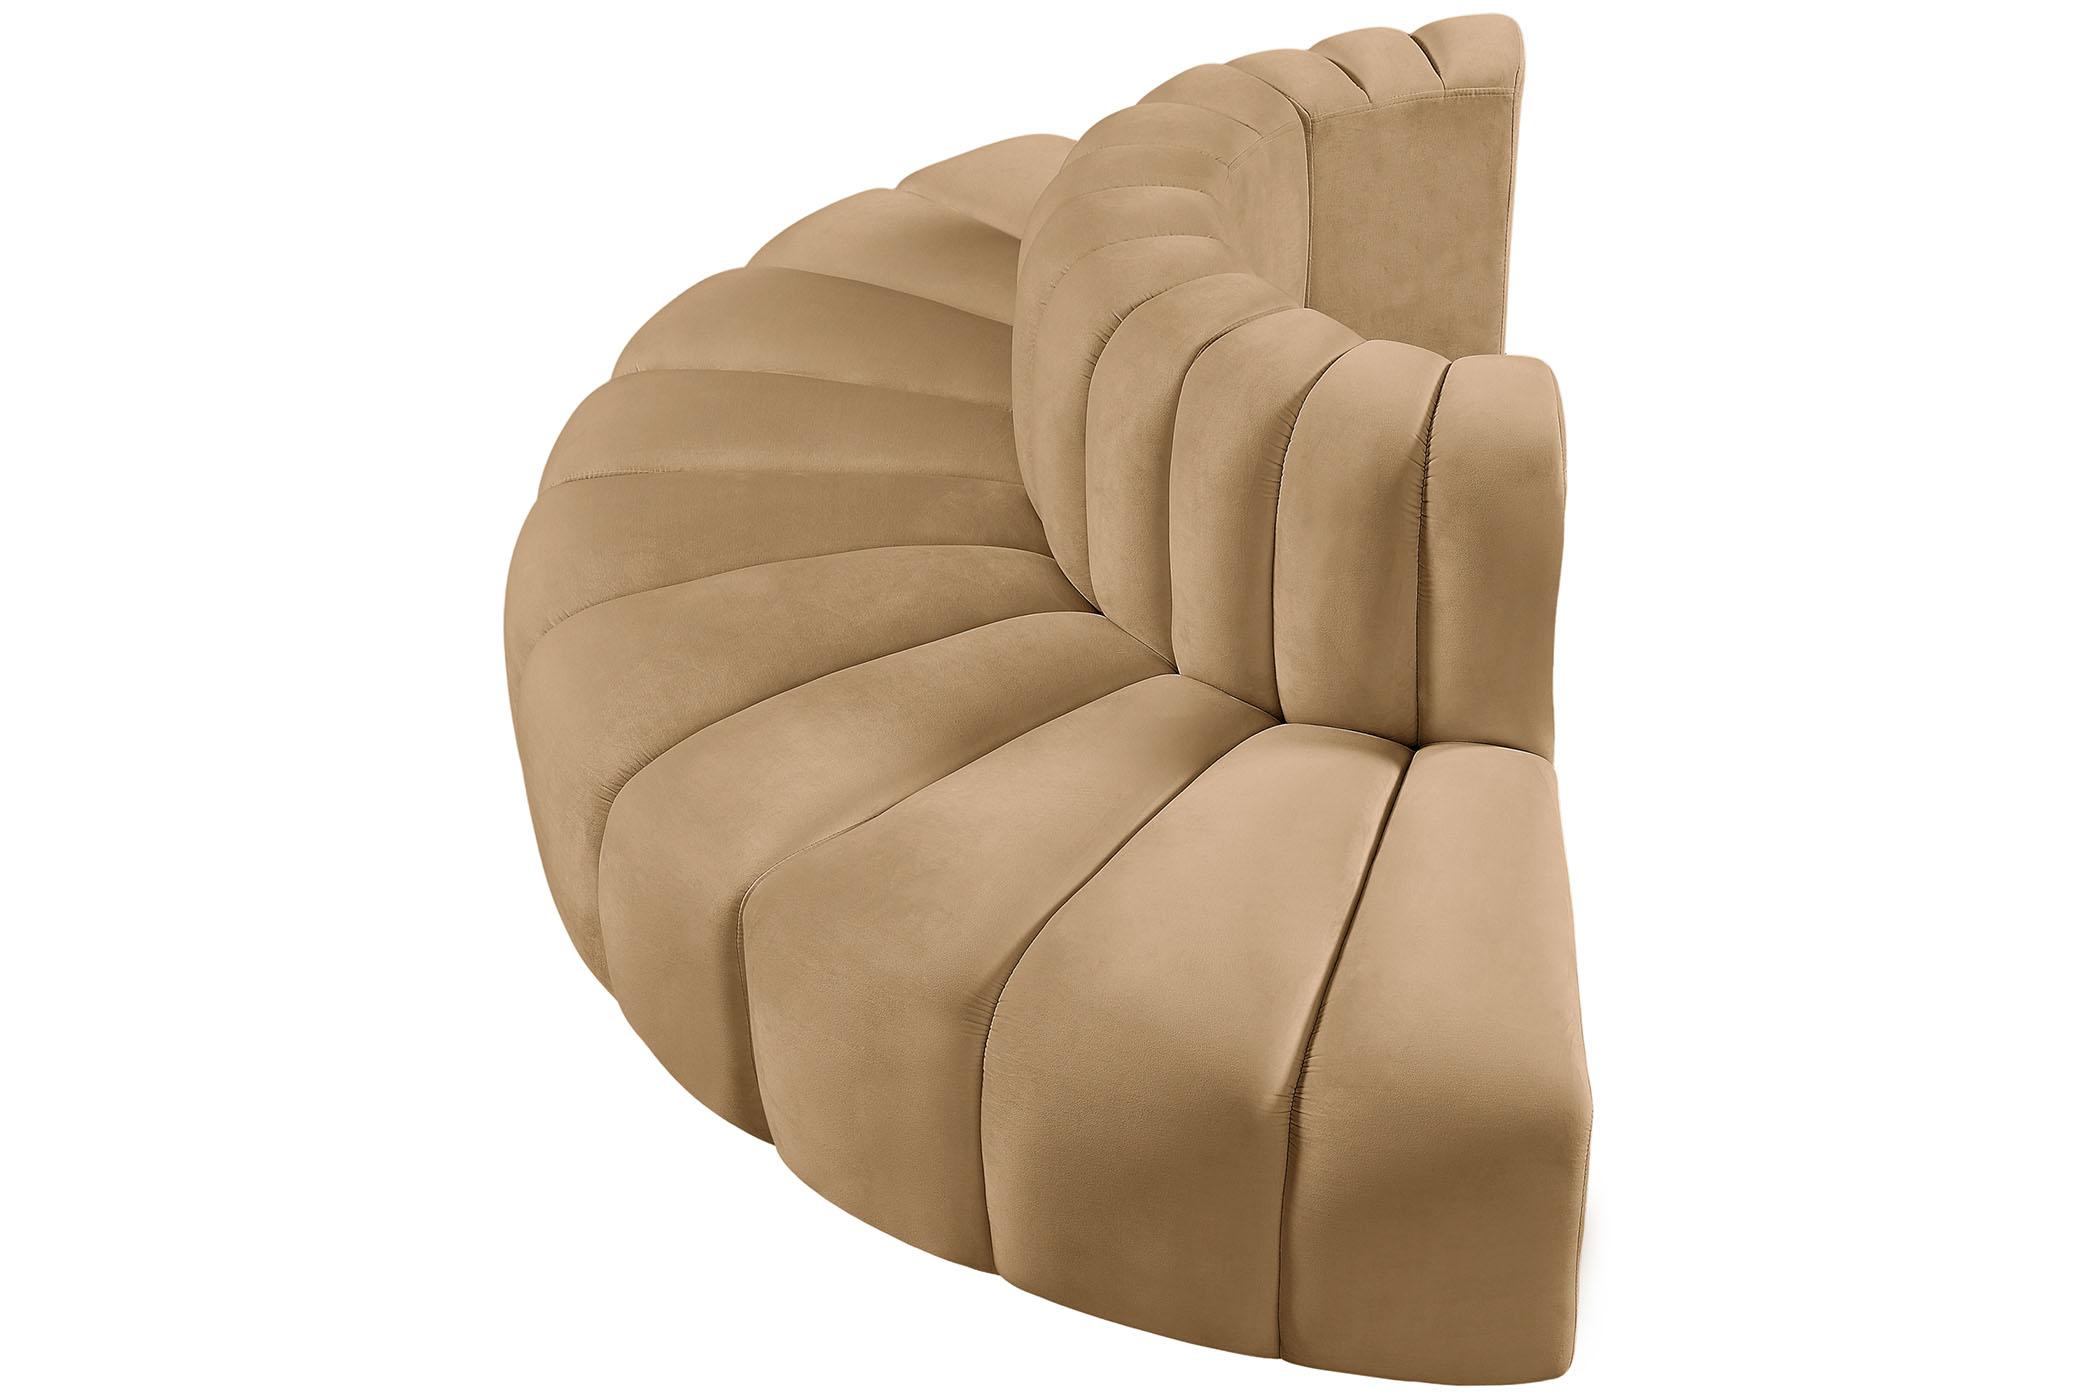 

    
103Camel-S4G Meridian Furniture Modular Sectional Sofa
